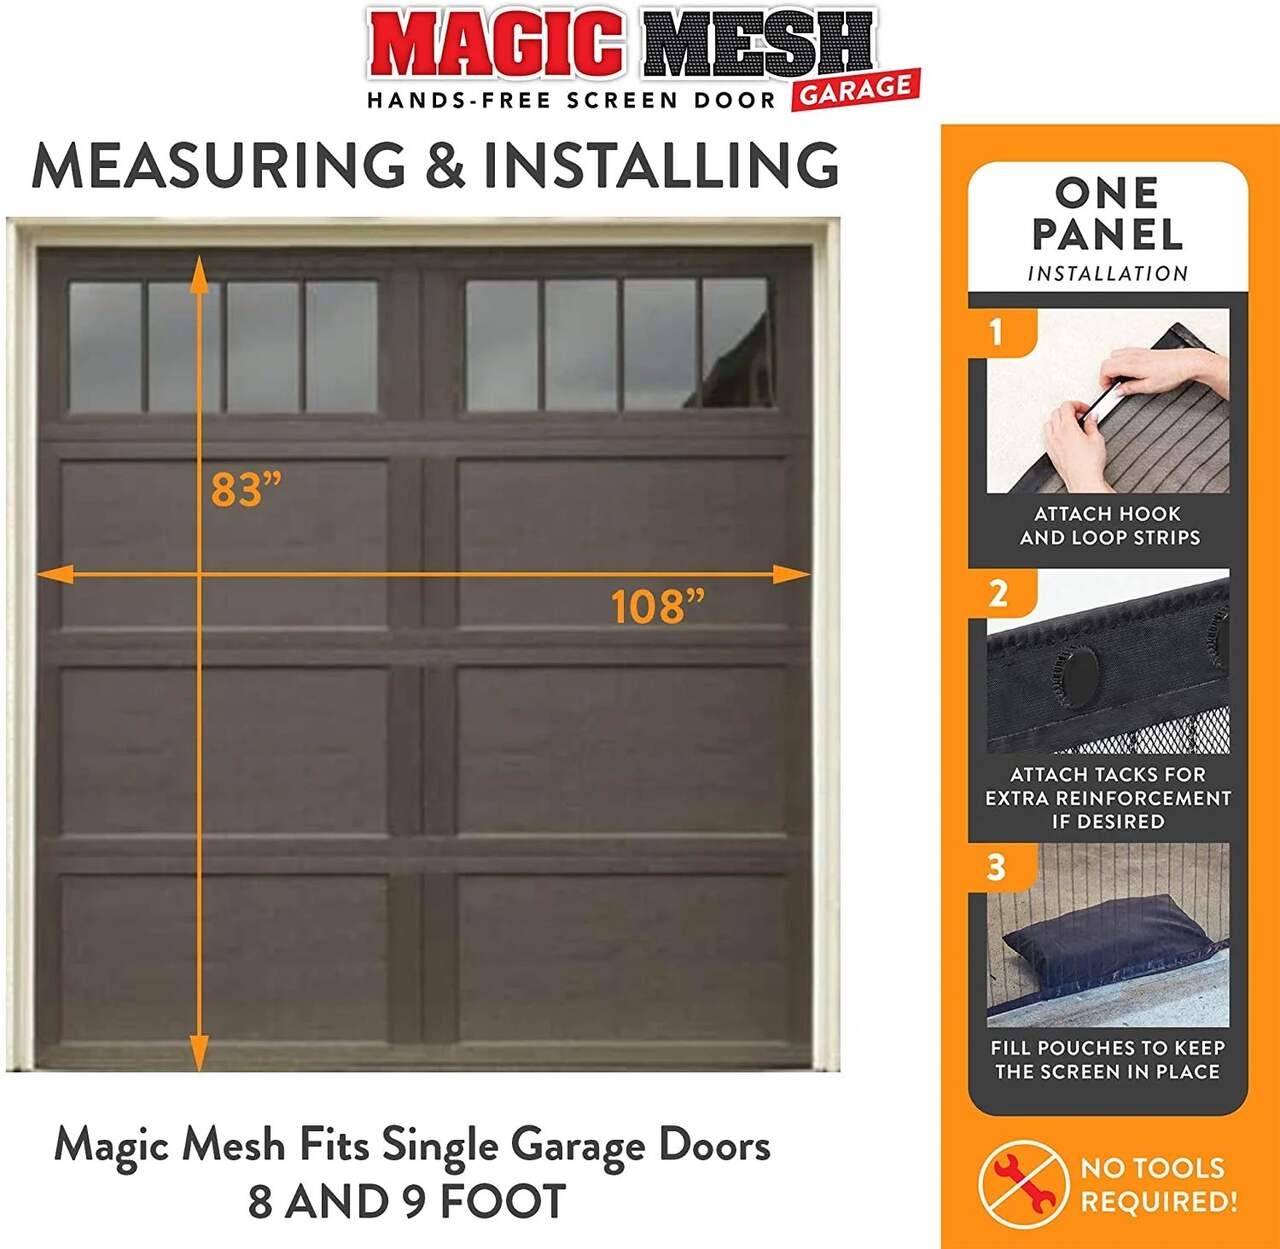 Magic Mesh MM181112 Garage Hands-Free Magnetic Screen Door, 8 x 9-ft, Black